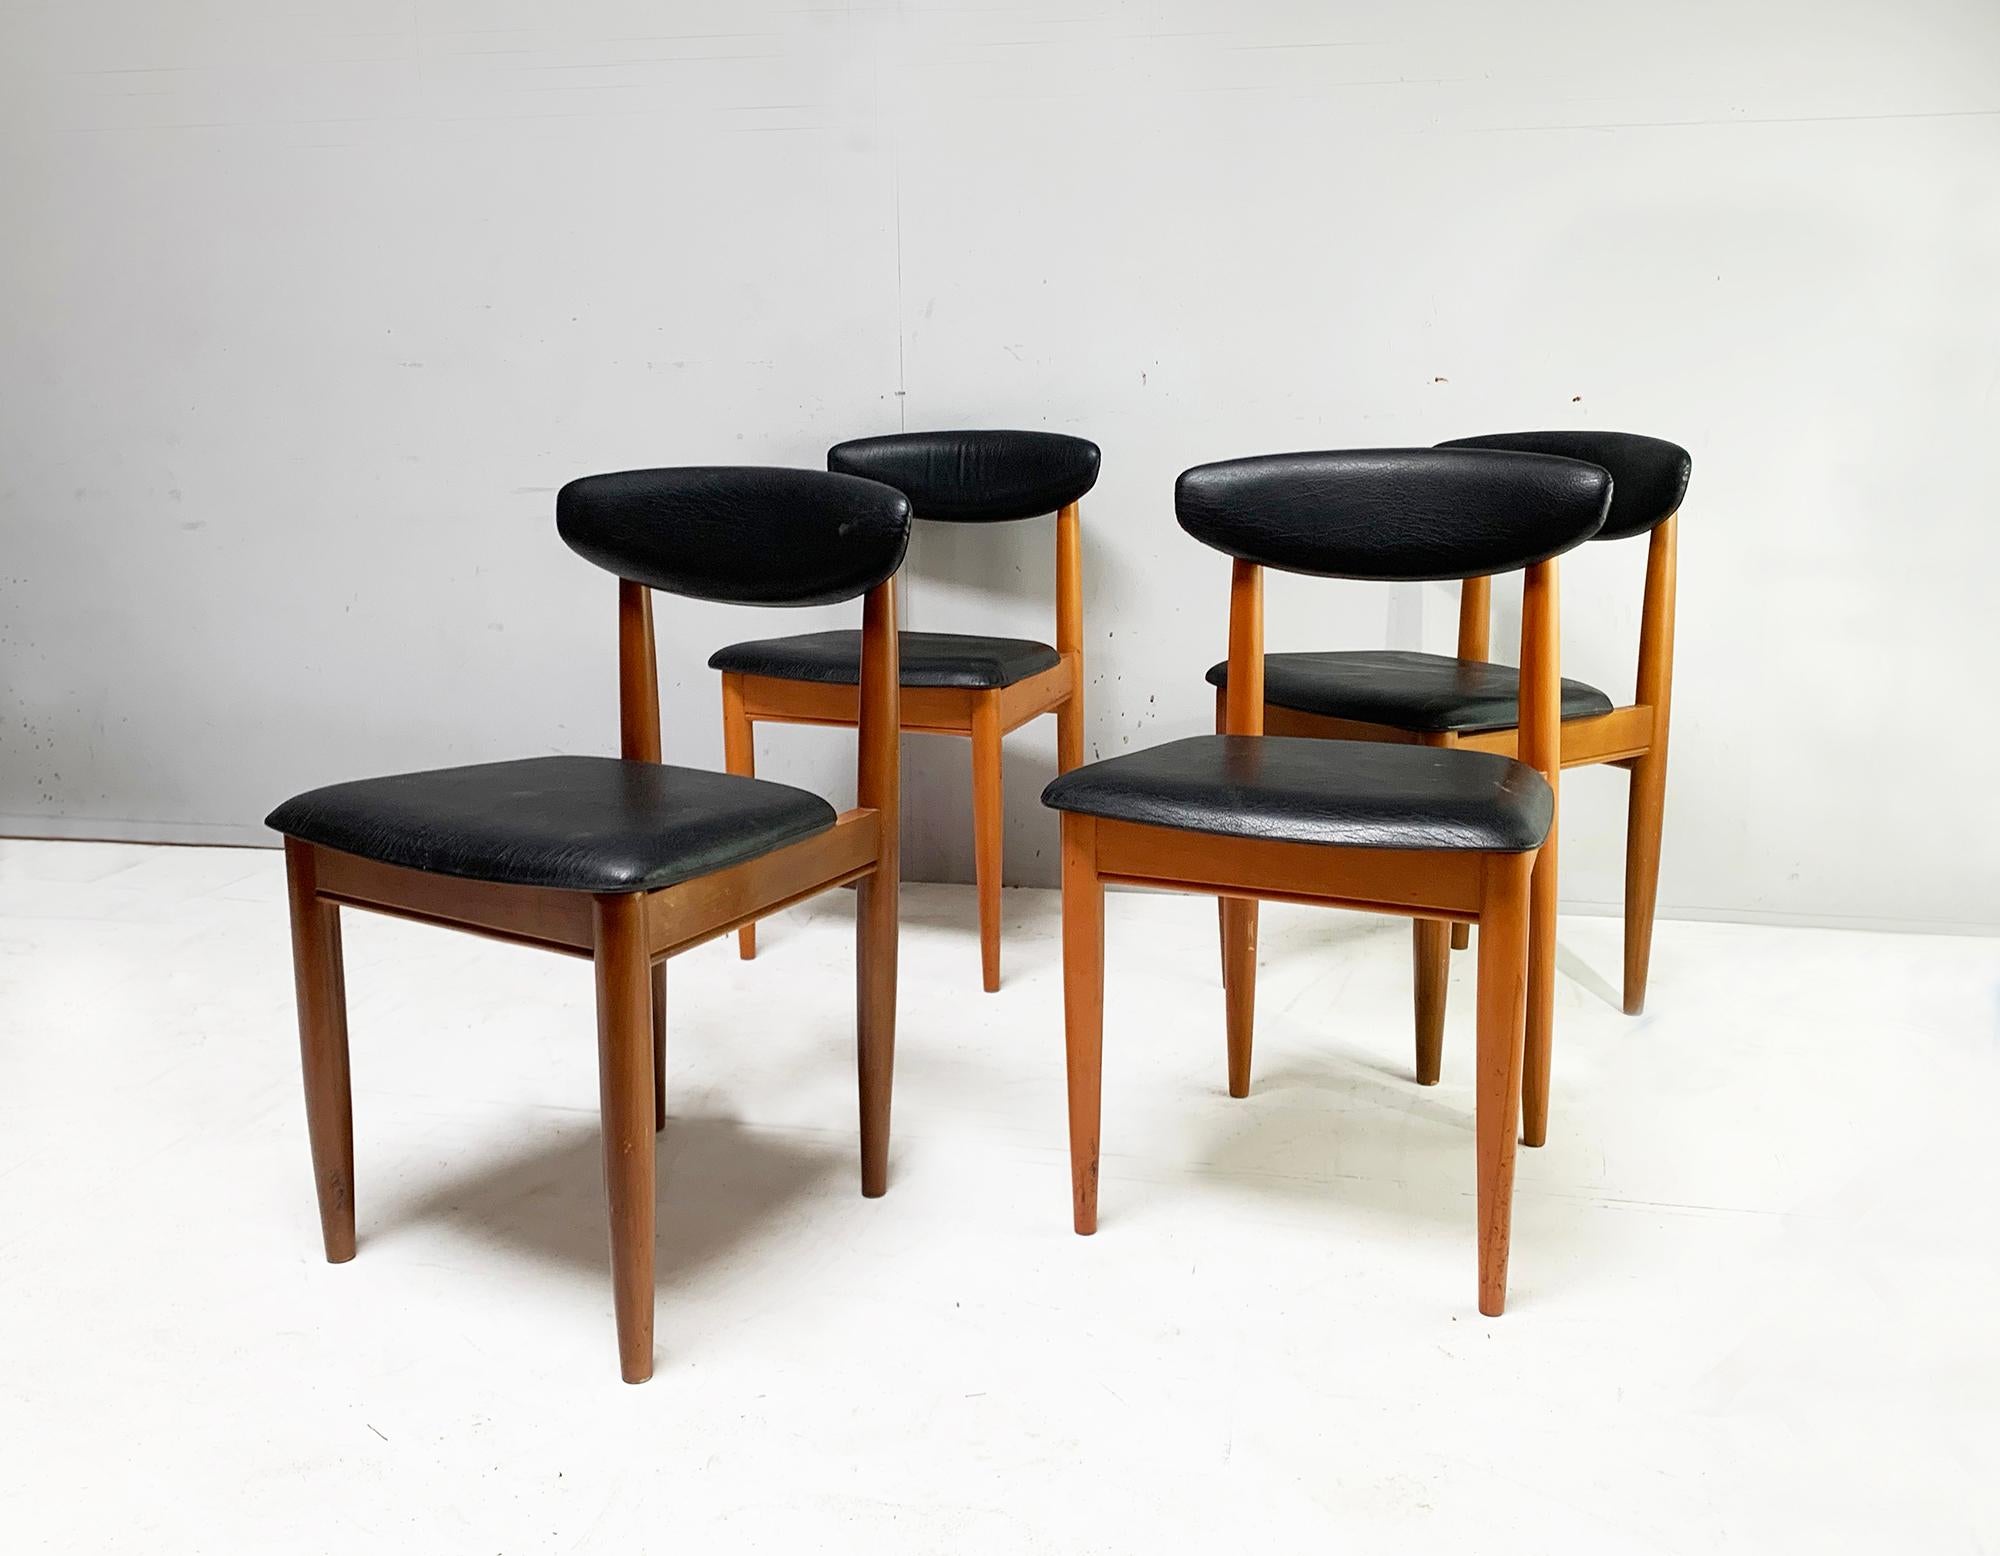 Le prix indiqué est celui des QUATRE chaises

Fondé en 1957 par Chaim Schreiber, le mobilier Schreiber est une intéressante success story britannique. La société était l'un des plus grands noms de l'ameublement dans les années 70, rivalisant avec